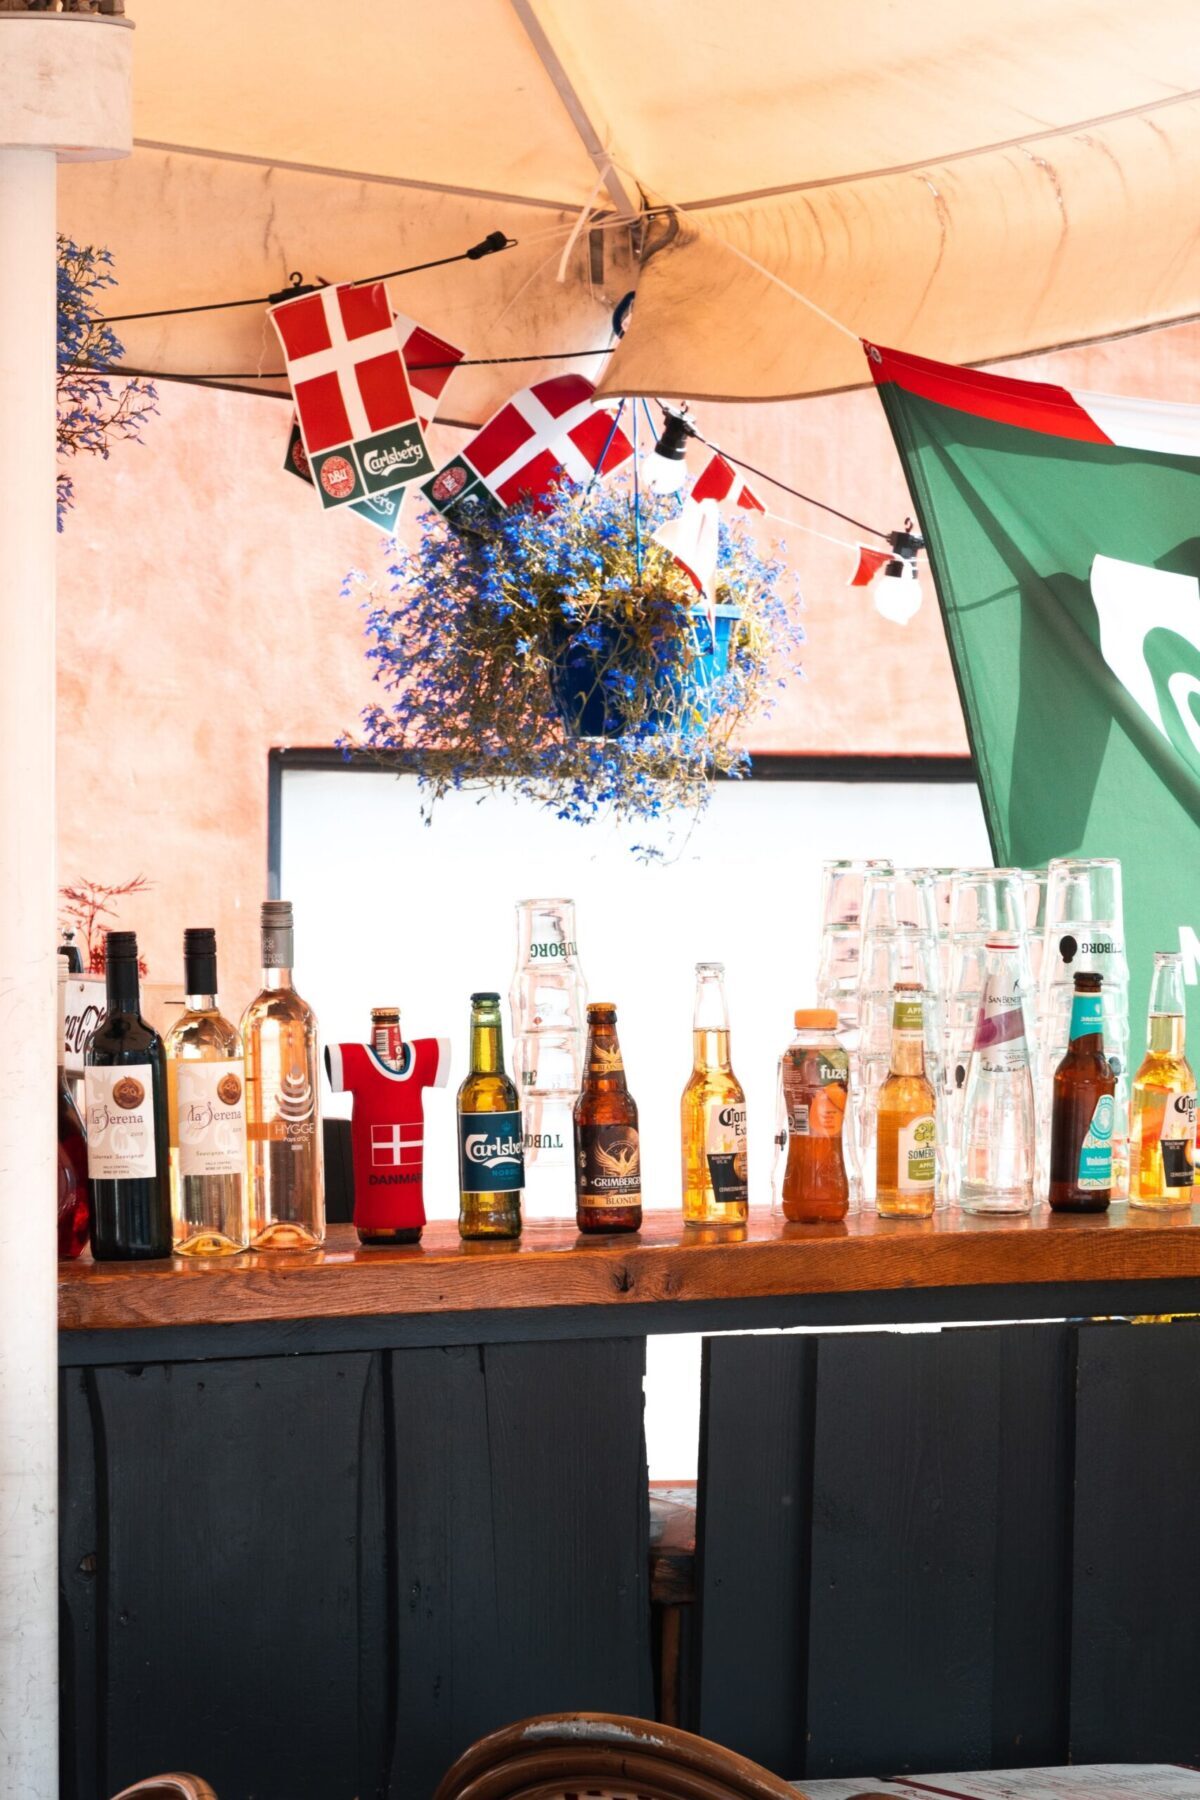 Bier hat Tradition in Dänemark. Verschiedene Flaschen auf einem Tresen, dahinter dänische Flaggen – Foto von Svend Nielsen auf Unsplash